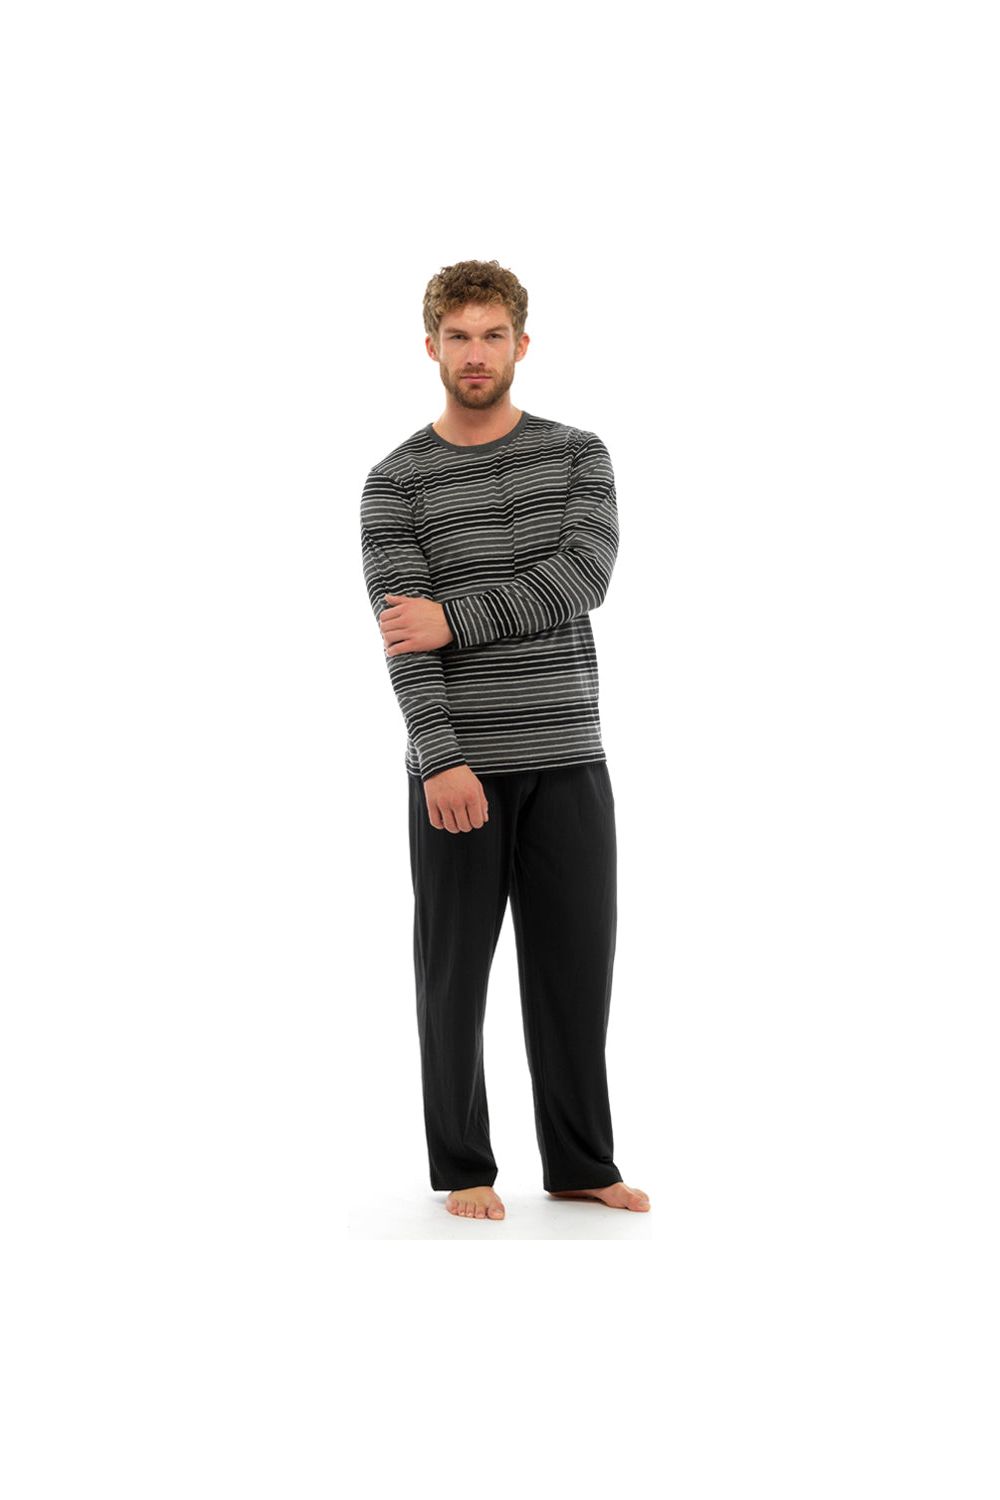 Mens Striped Long Pyjamas - Pyjamas.com